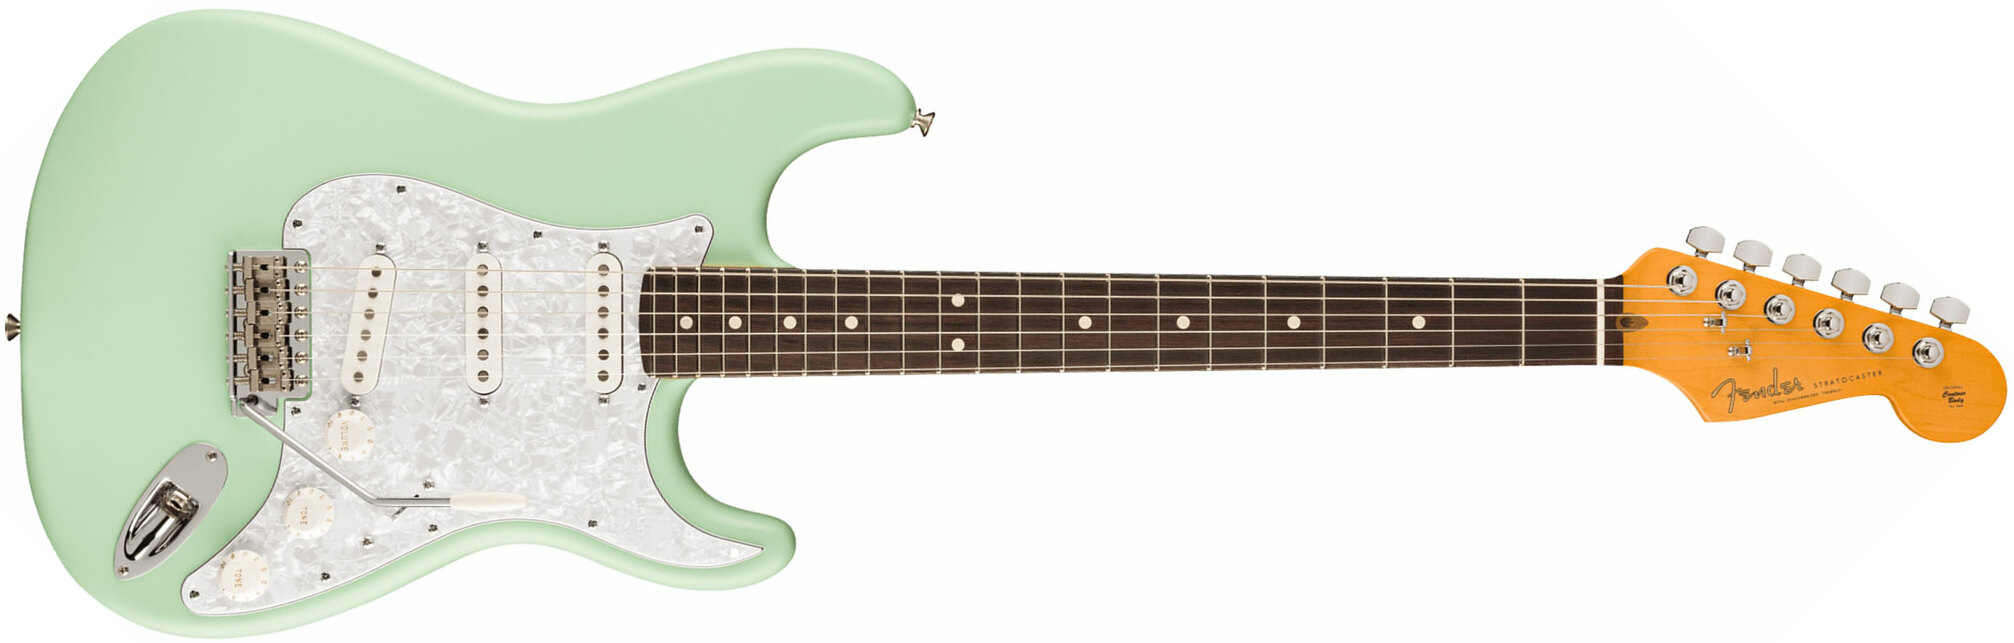 Fender Cory Wong Strat Ltd Signature Usa Stss Trem Rw - Surf Green - Elektrische gitaar in Str-vorm - Main picture